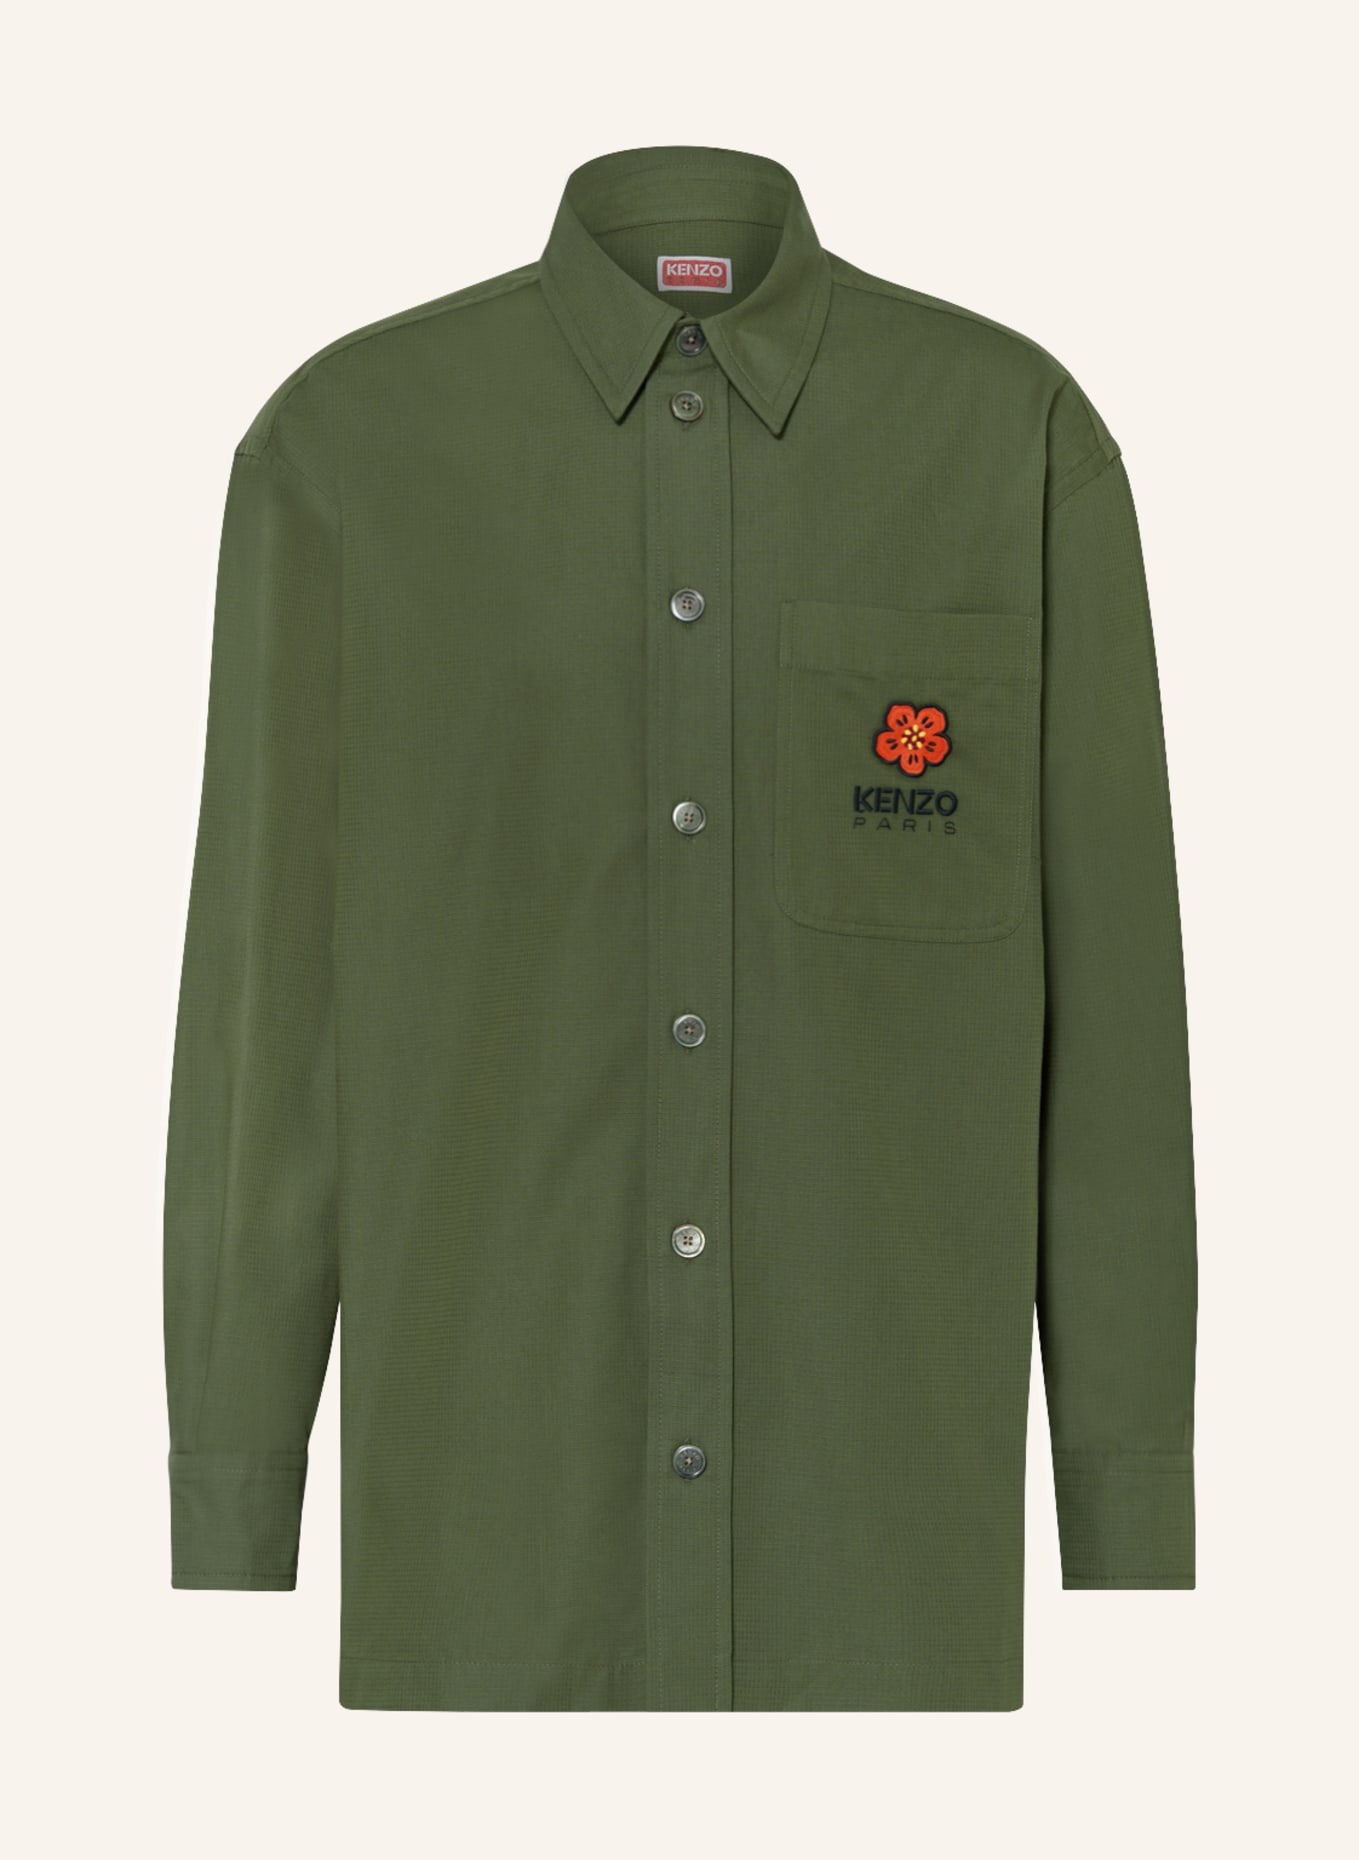 KENZO Oversized overshirt, Color: GREEN (Image 1)